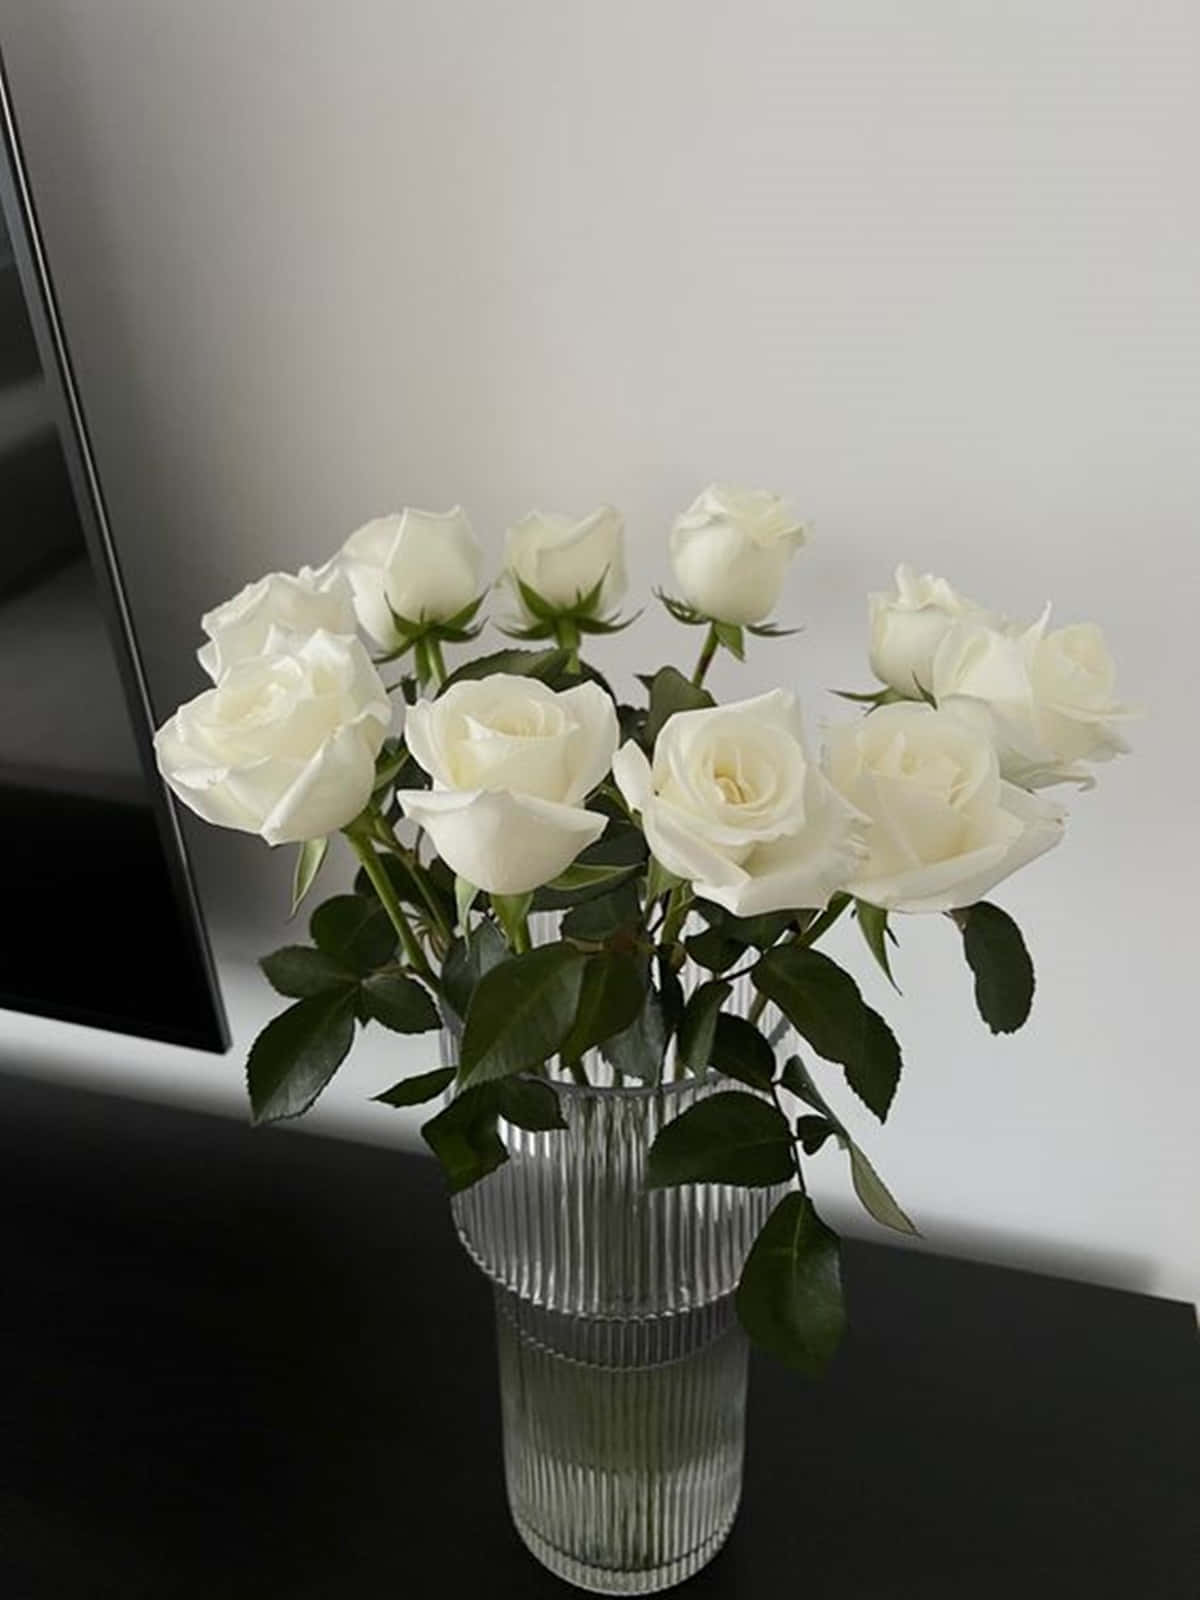 En smuk hvid rose der viser sin skønhed og elegance. Wallpaper